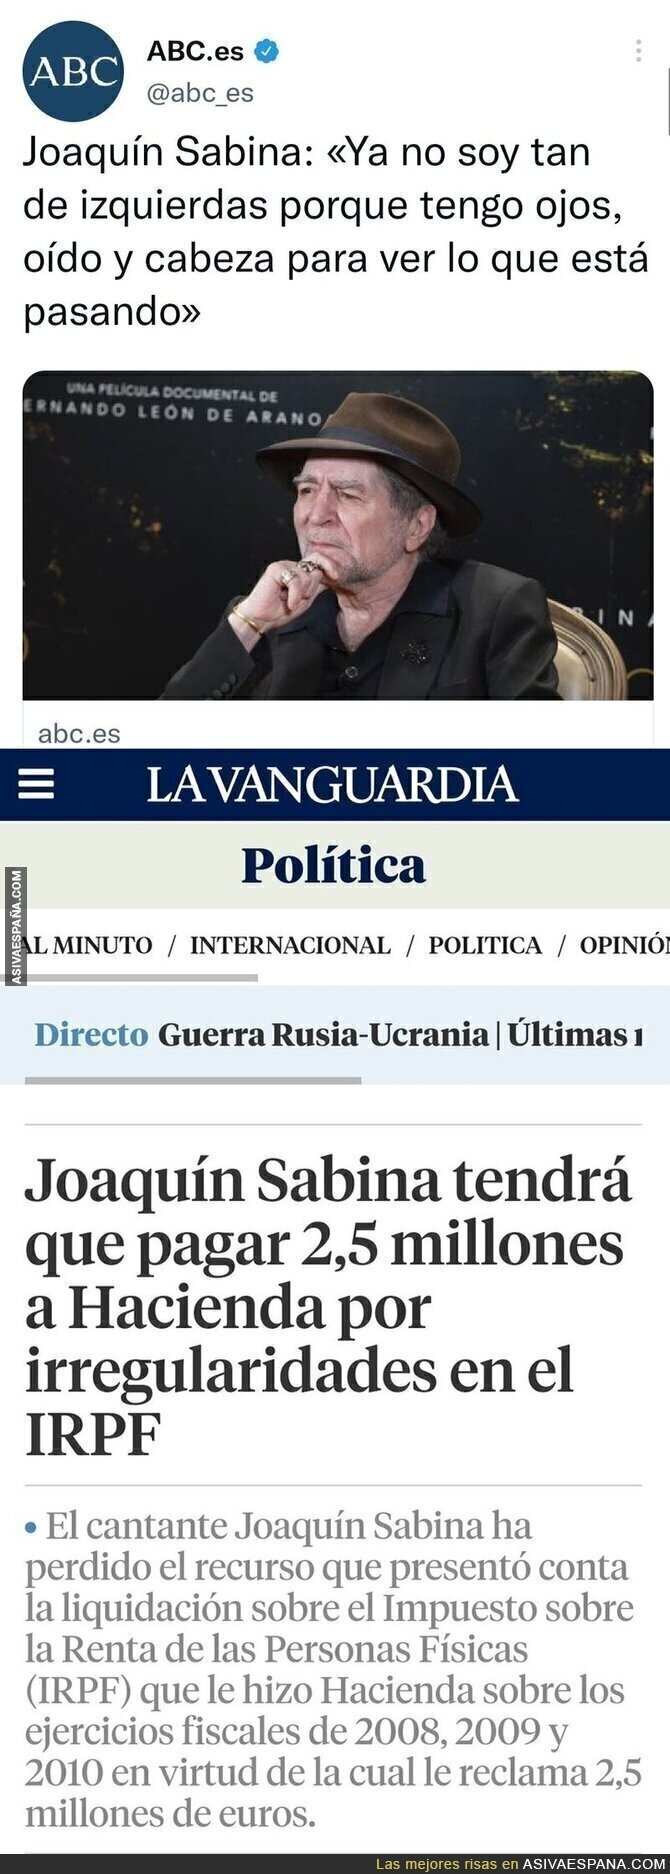 La noticia que confirma que Joaquín Sabina no es de izquierdas